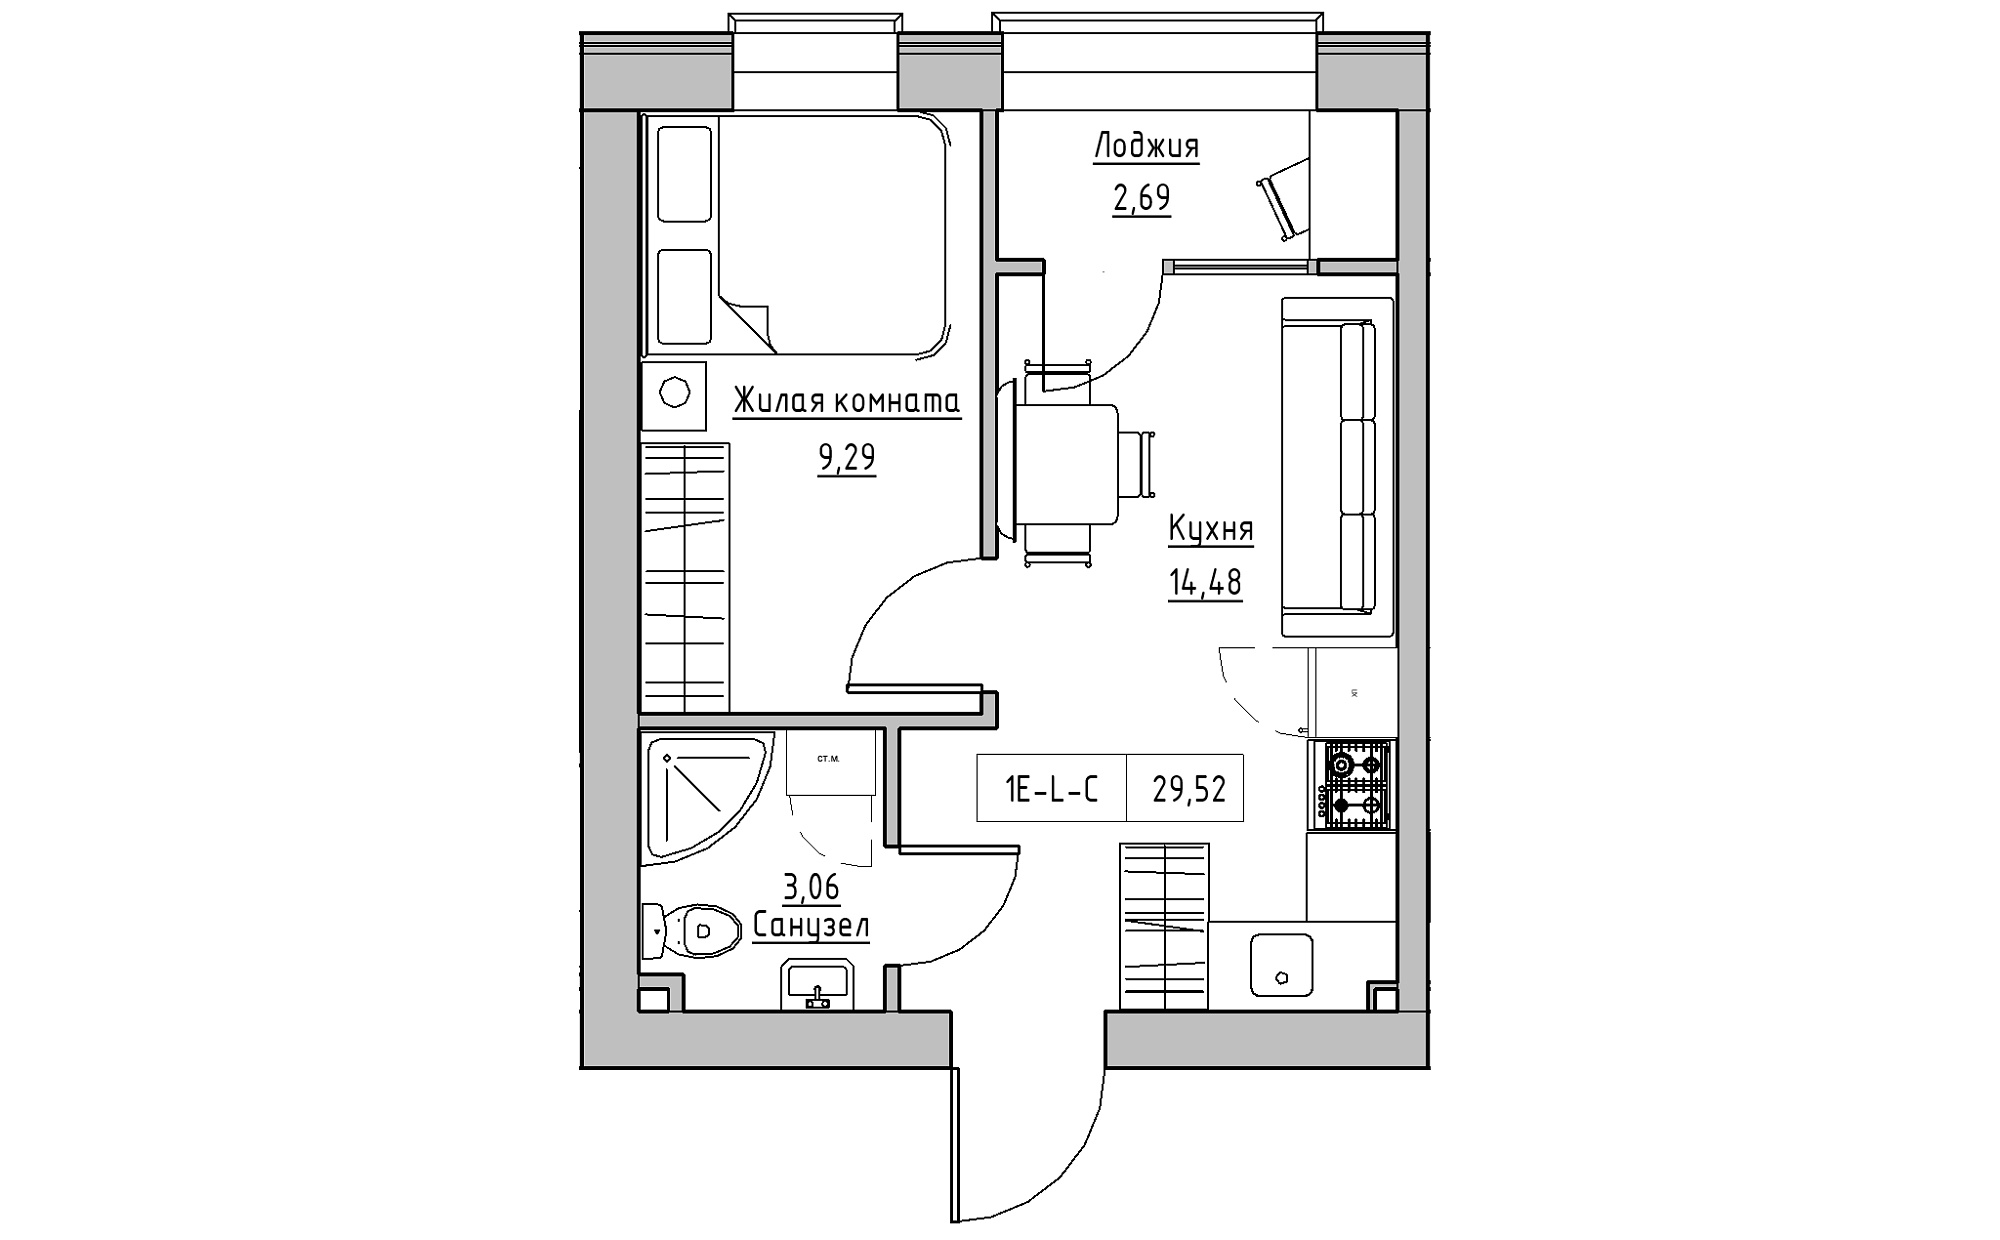 Планування 1-к квартира площею 29.52м2, KS-022-02/0006.